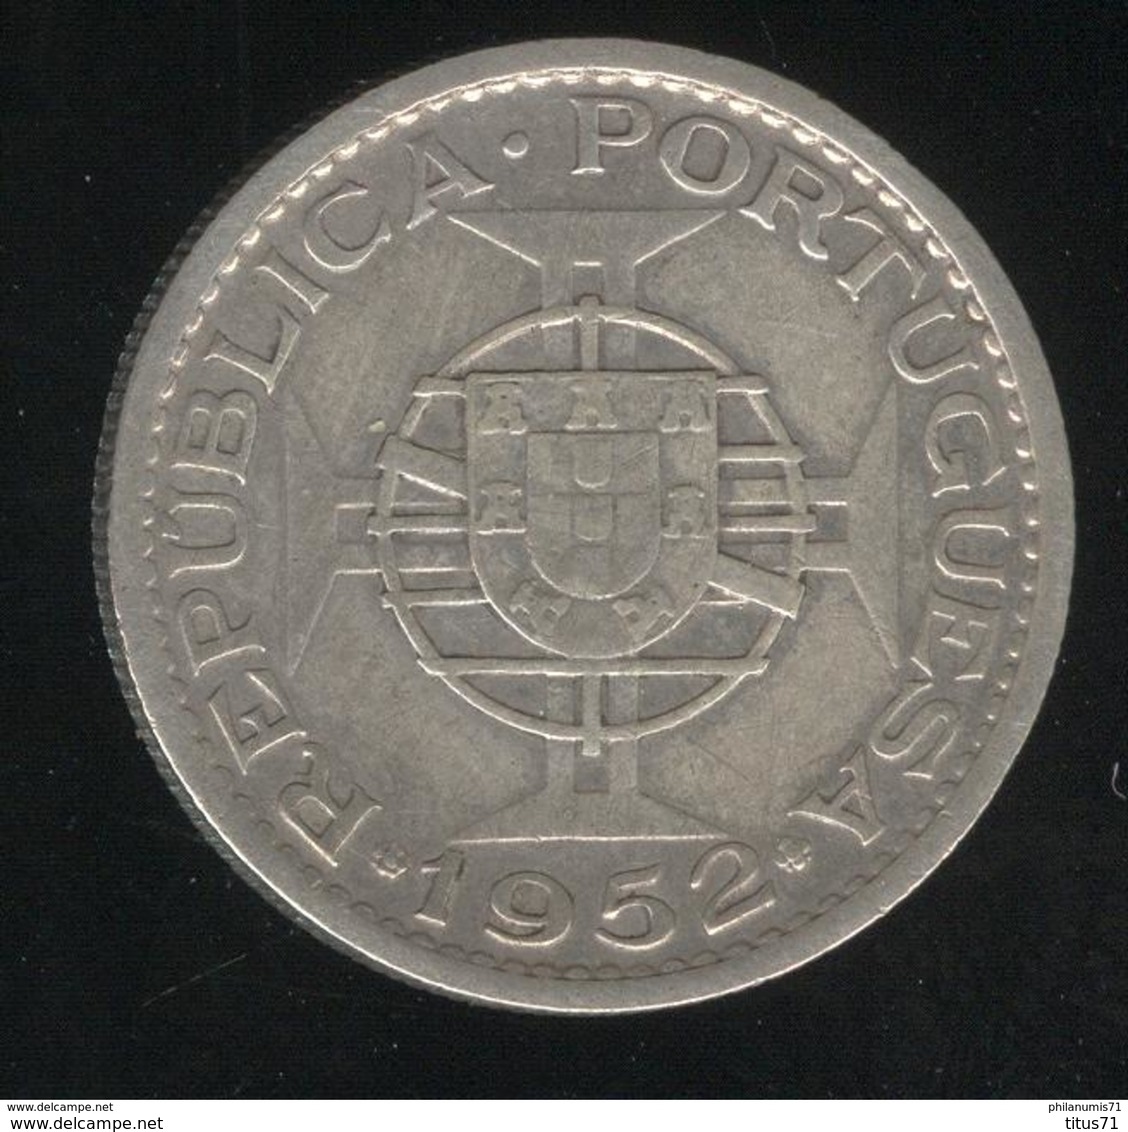 10 Escudos Angola 1952 - Colonie Portugaise / Portuguese Colony - TTB - Portugal